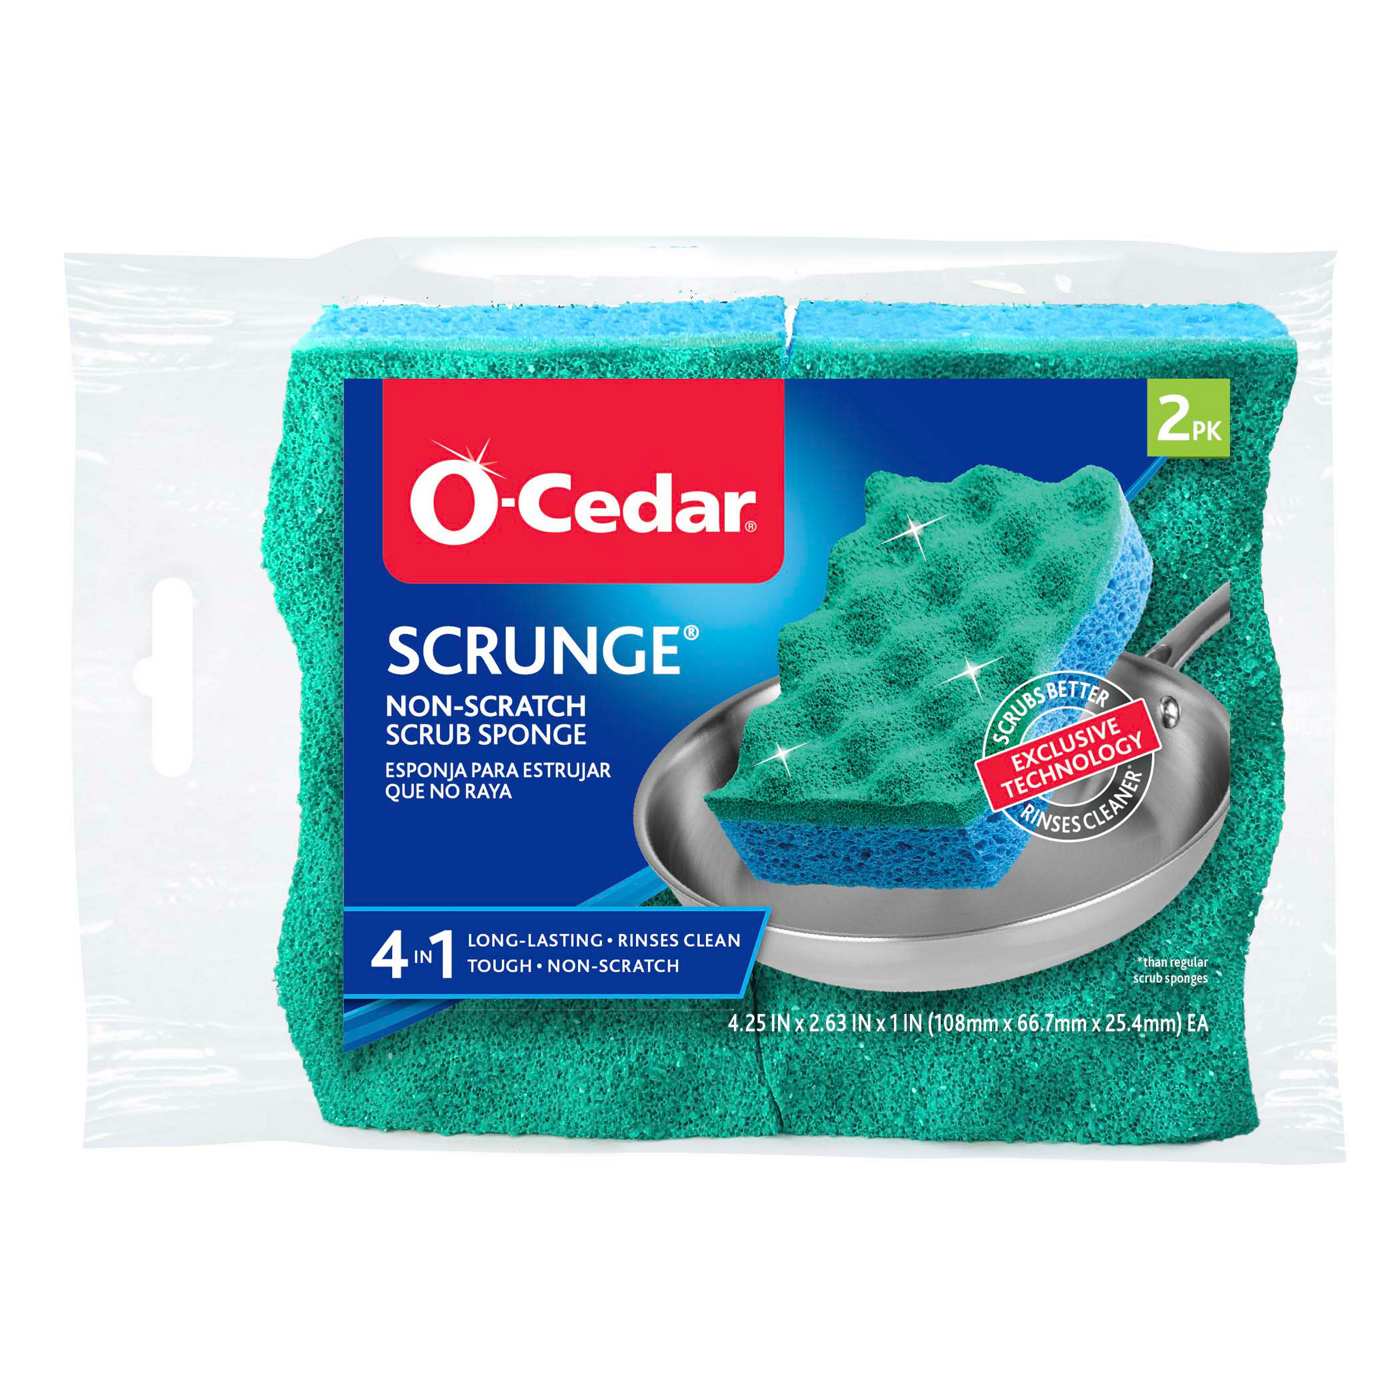 O-Cedar Scrunge Non-Scratch Scrub Sponge; image 1 of 8